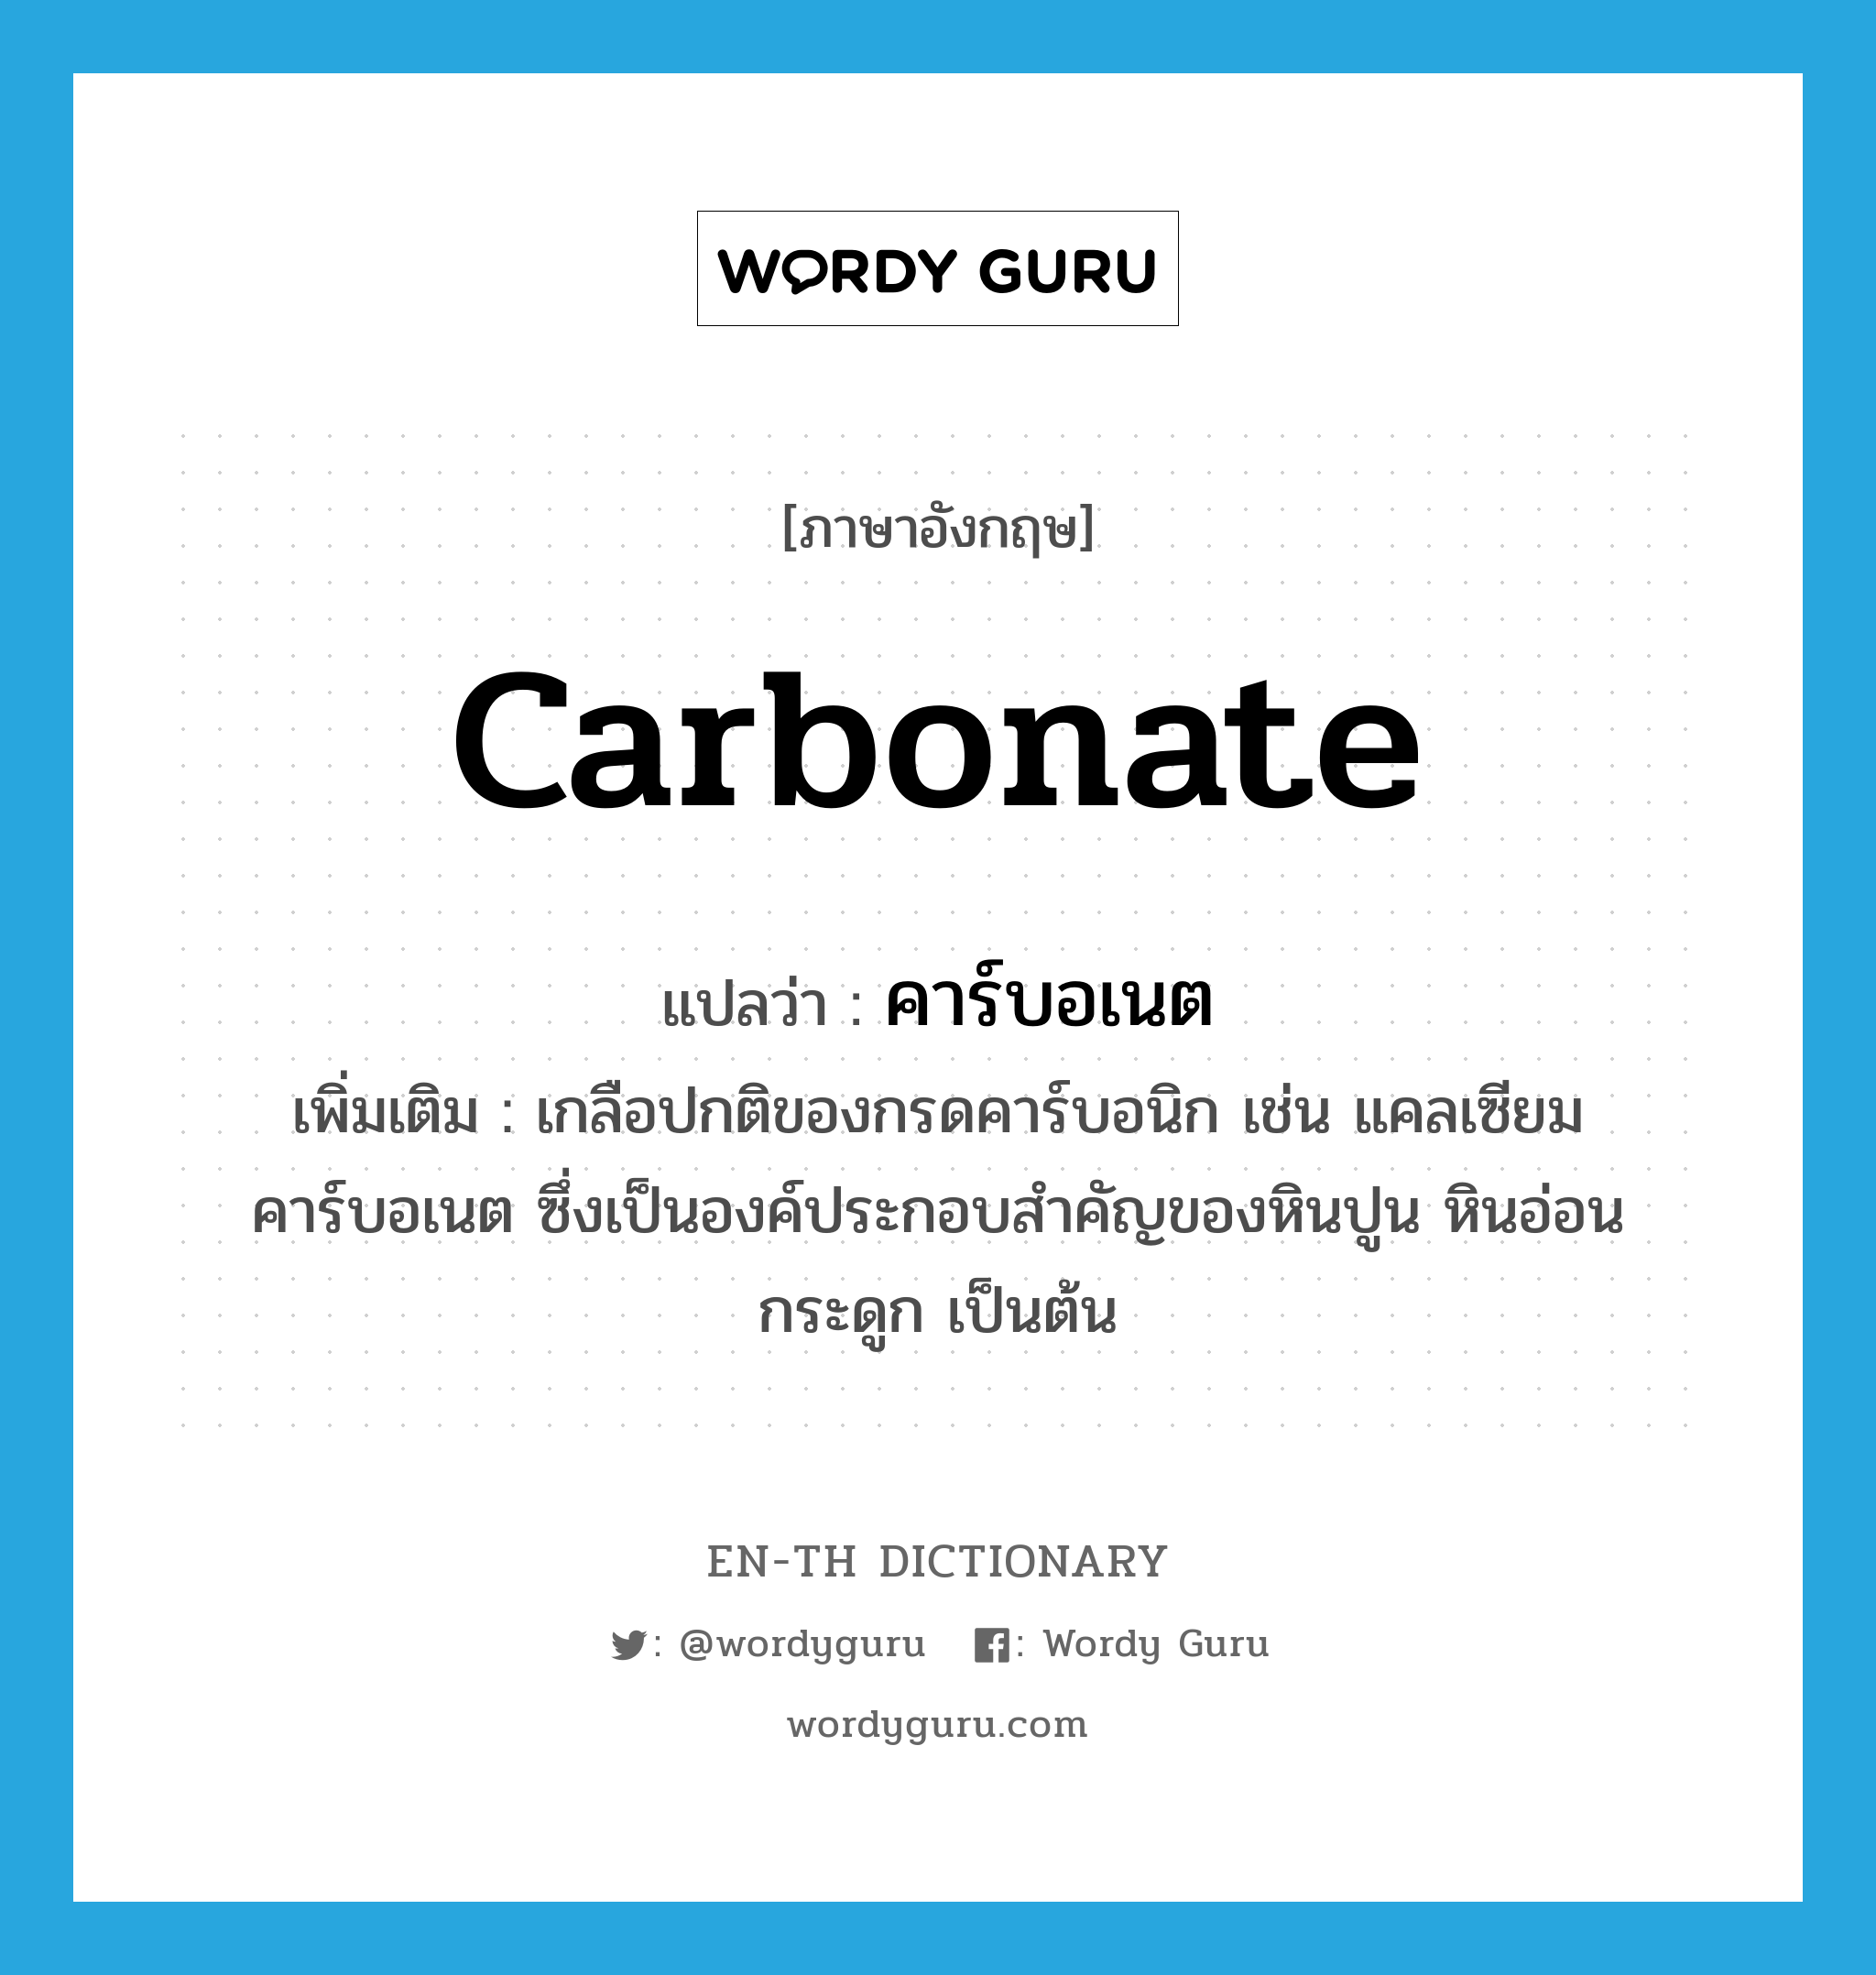 คาร์บอเนต ภาษาอังกฤษ?, คำศัพท์ภาษาอังกฤษ คาร์บอเนต แปลว่า carbonate ประเภท N เพิ่มเติม เกลือปกติของกรดคาร์บอนิก เช่น แคลเซียมคาร์บอเนต ซึ่งเป็นองค์ประกอบสำคัญของหินปูน หินอ่อน กระดูก เป็นต้น หมวด N